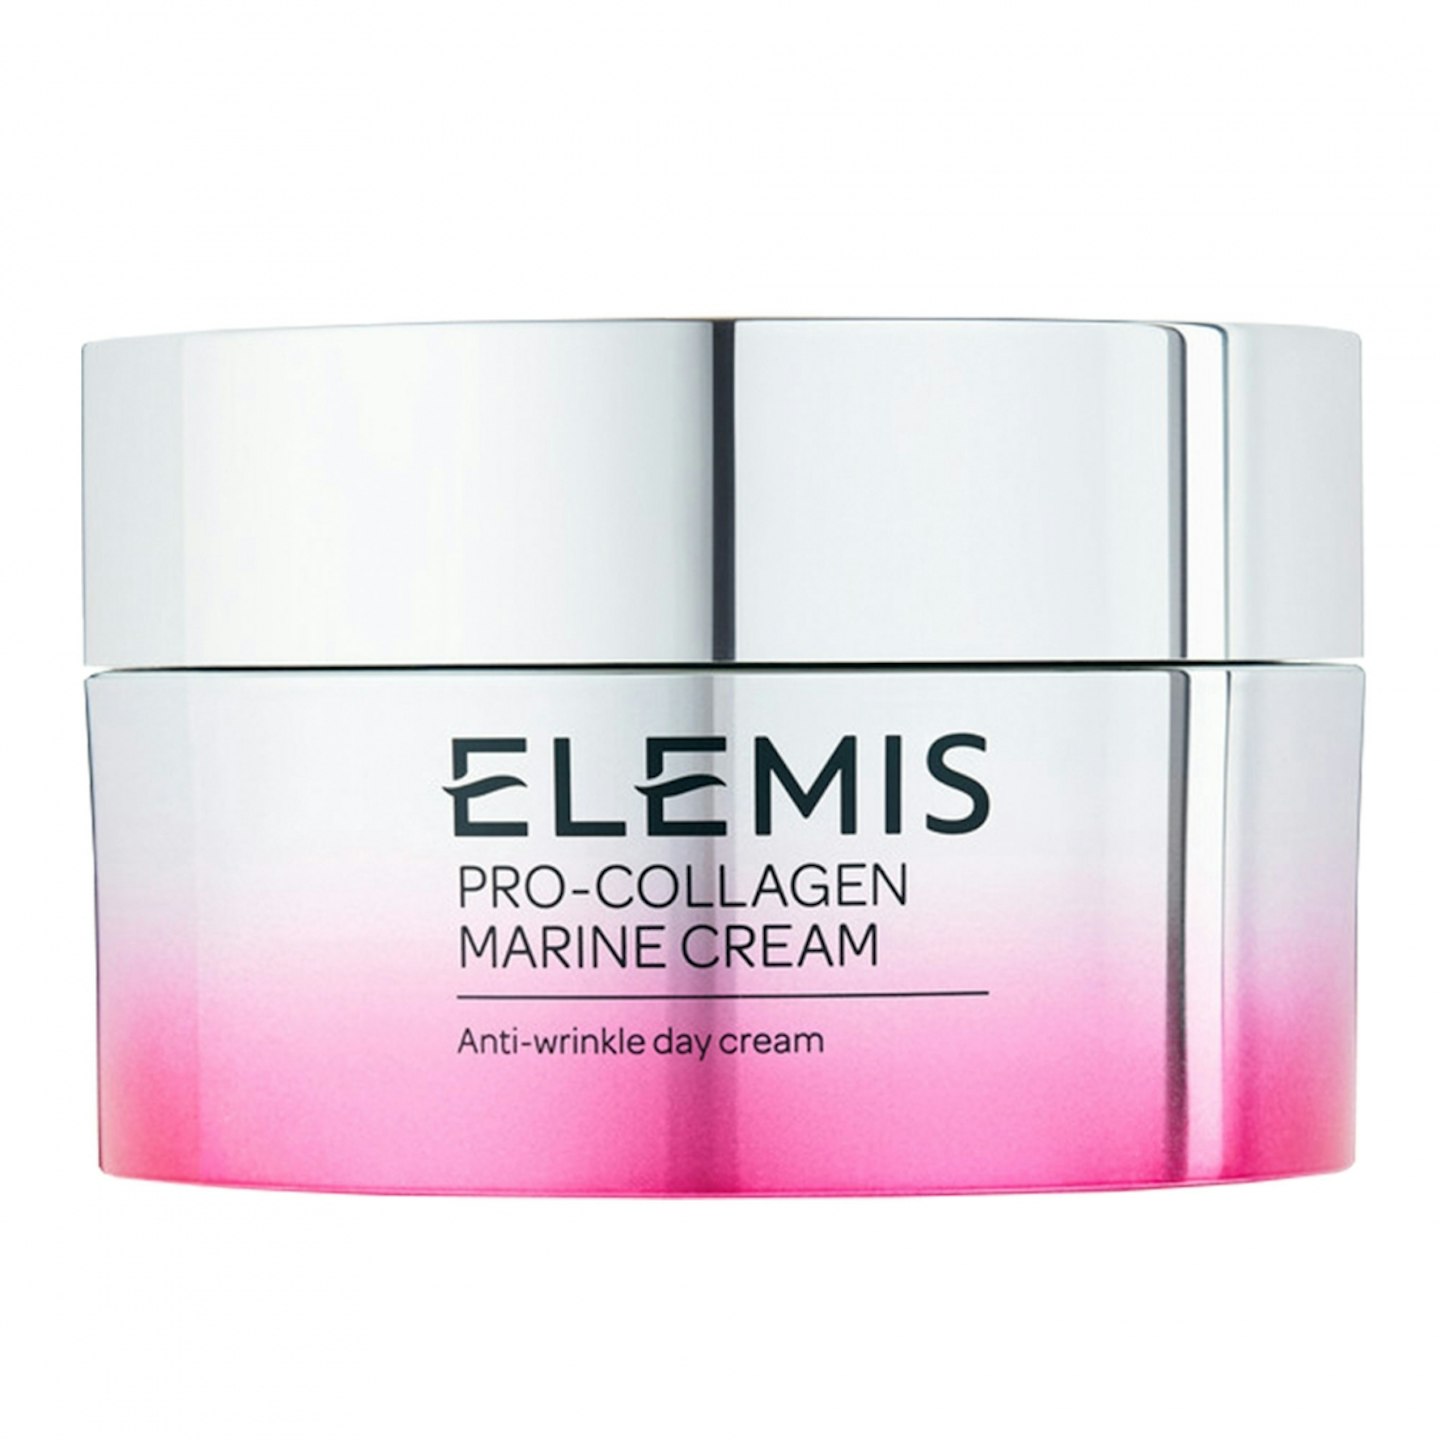 Elemis Pro-Collagen Marine Cream, £110